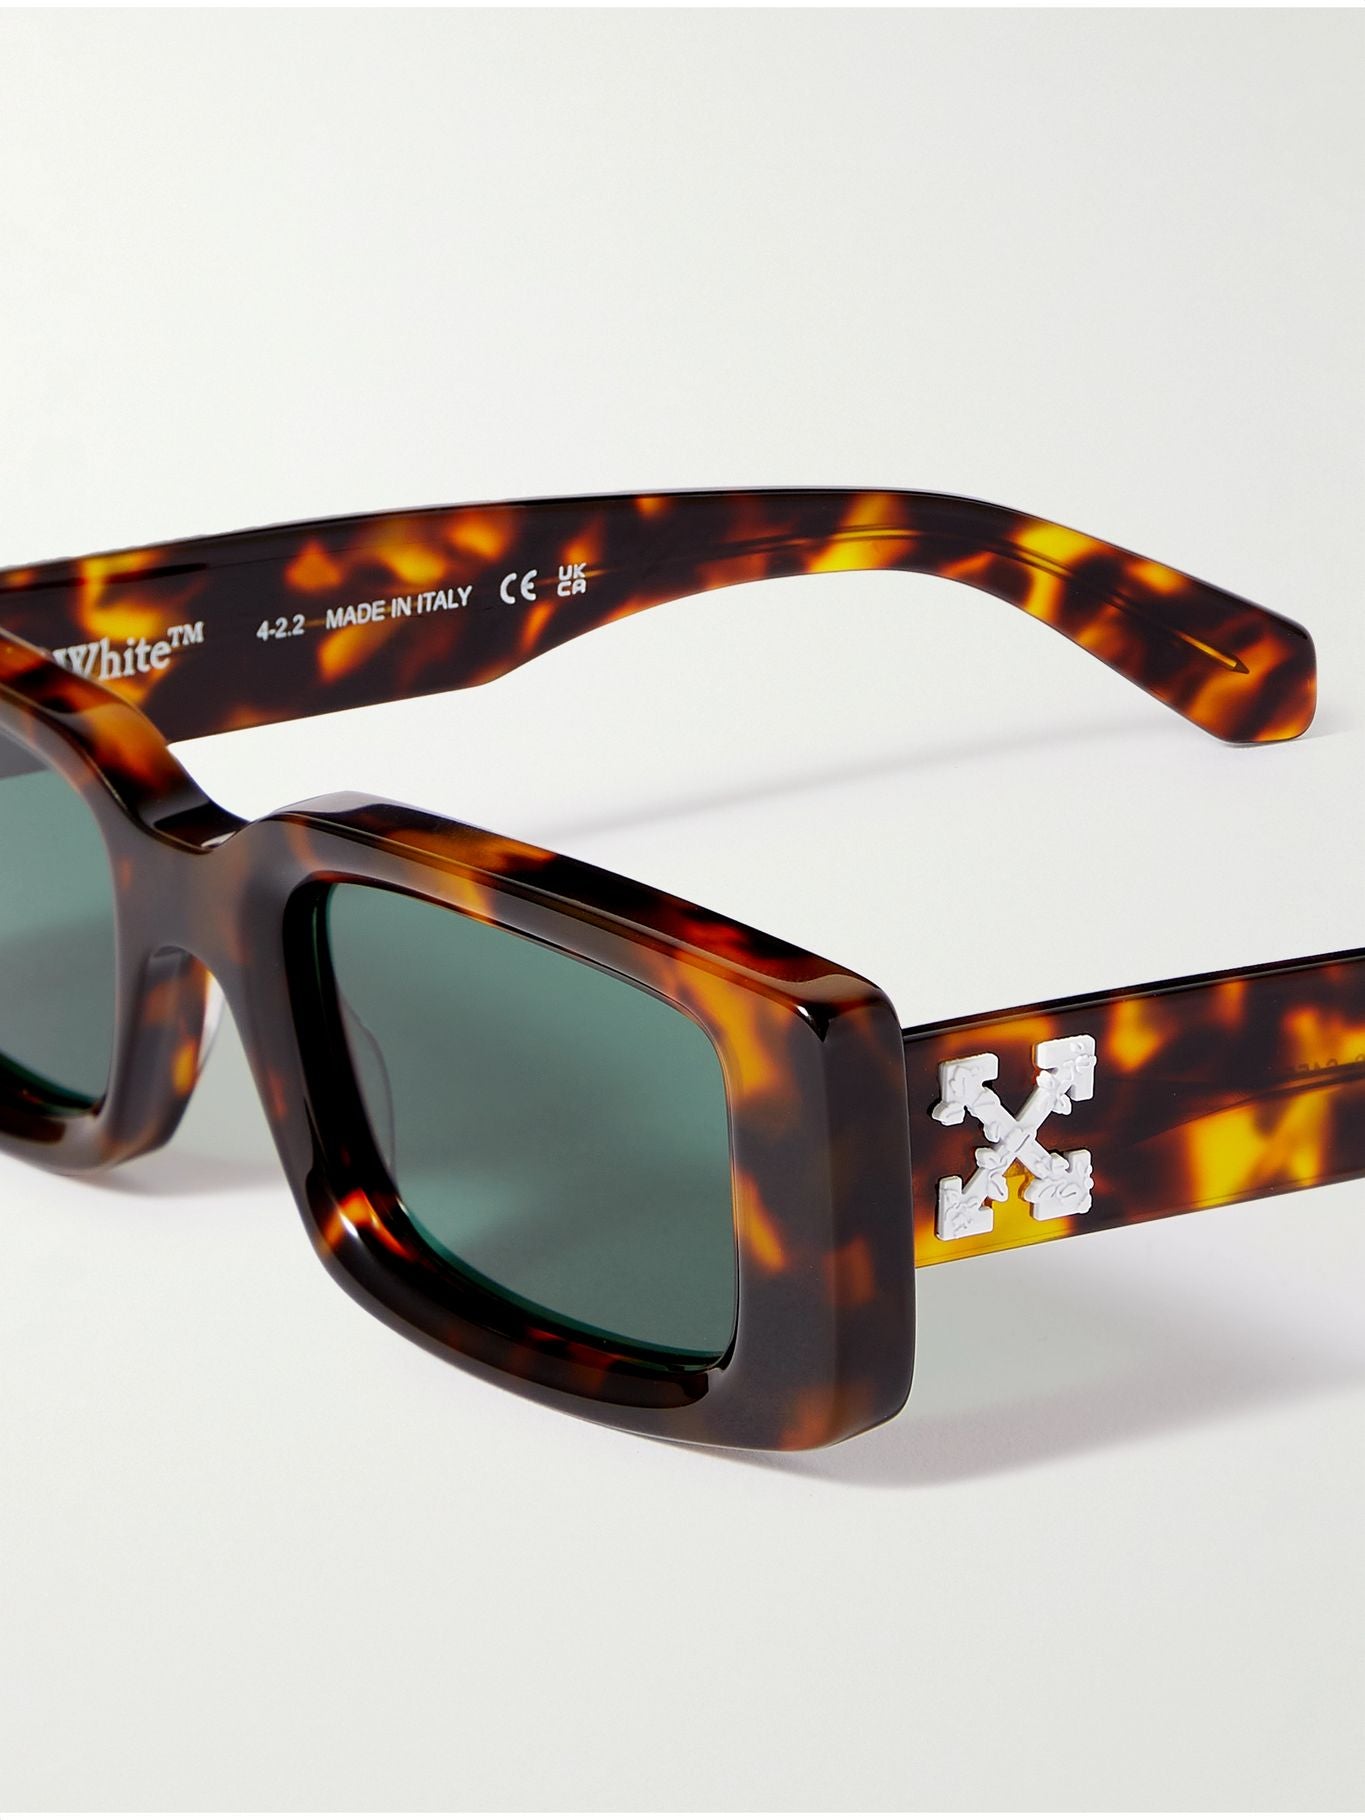 Off-White Arthur Havana Green 50mm New Sunglasses